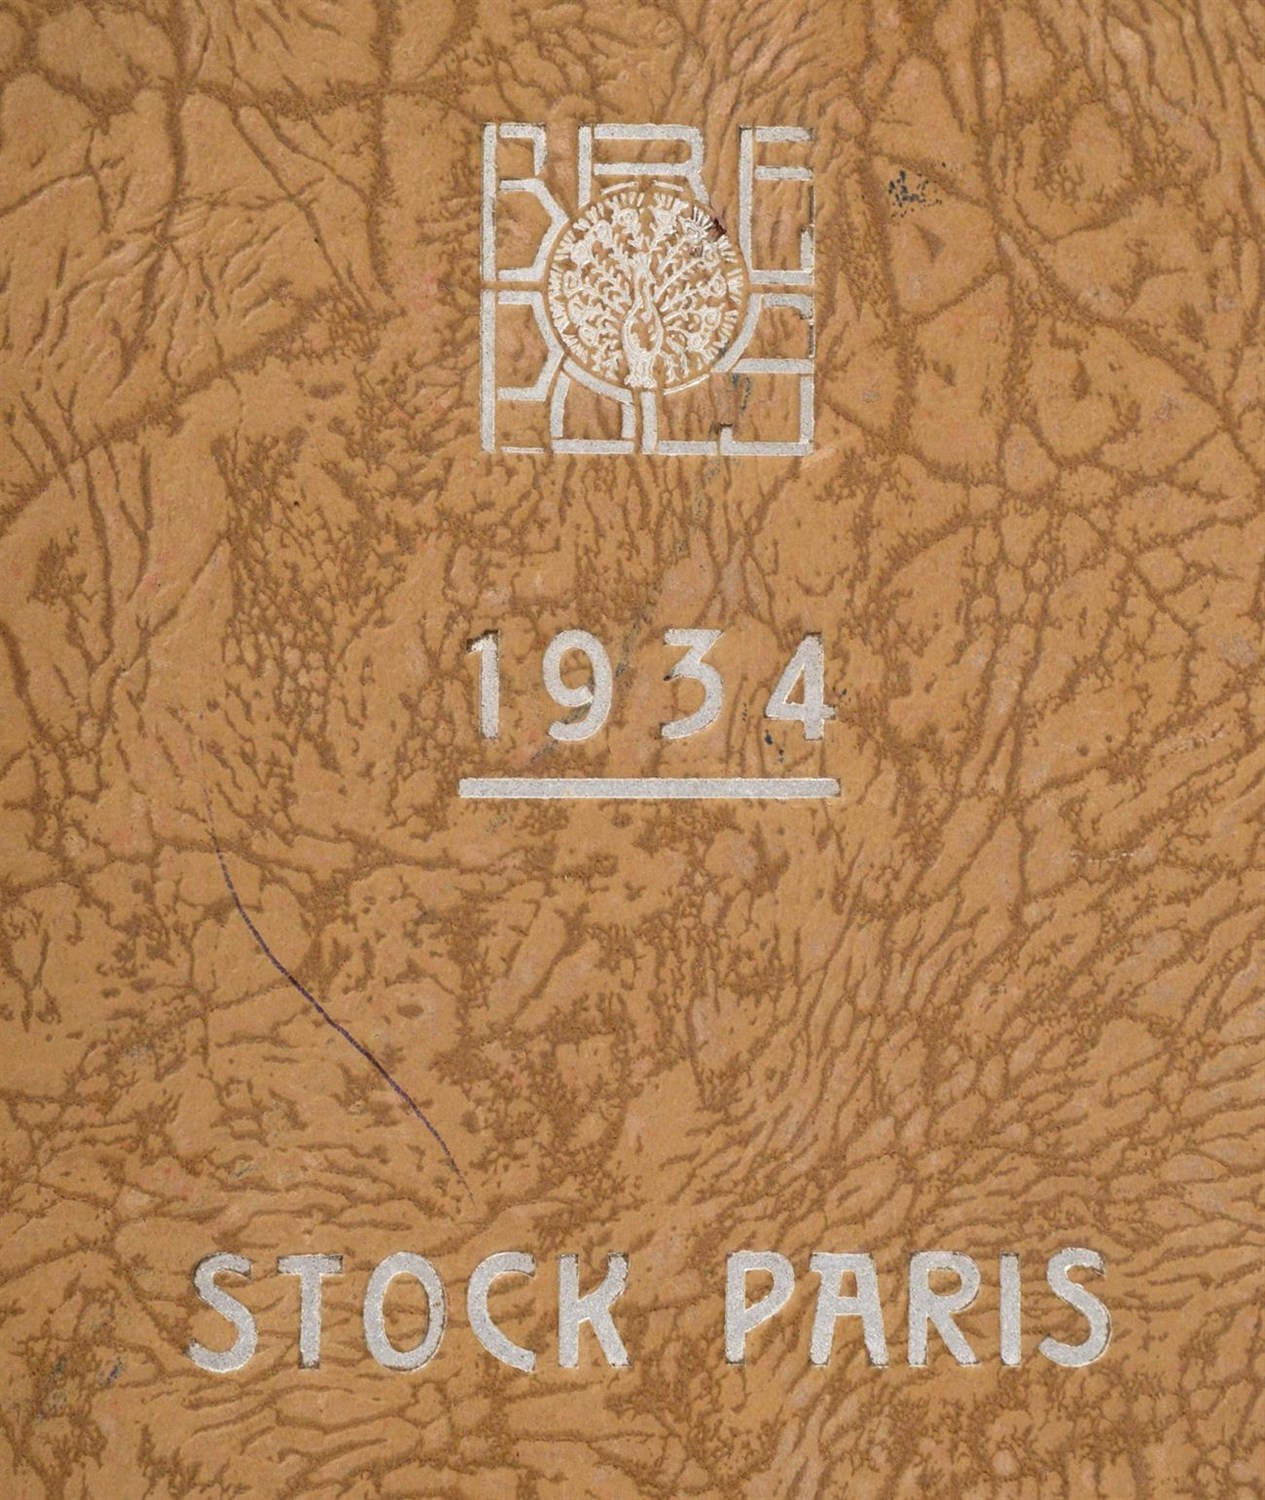 Lot 2008 - Small Album of Wallpaper Designs, 1934 Papiers Peints Brepols a Paris, 240 pages of floral,...